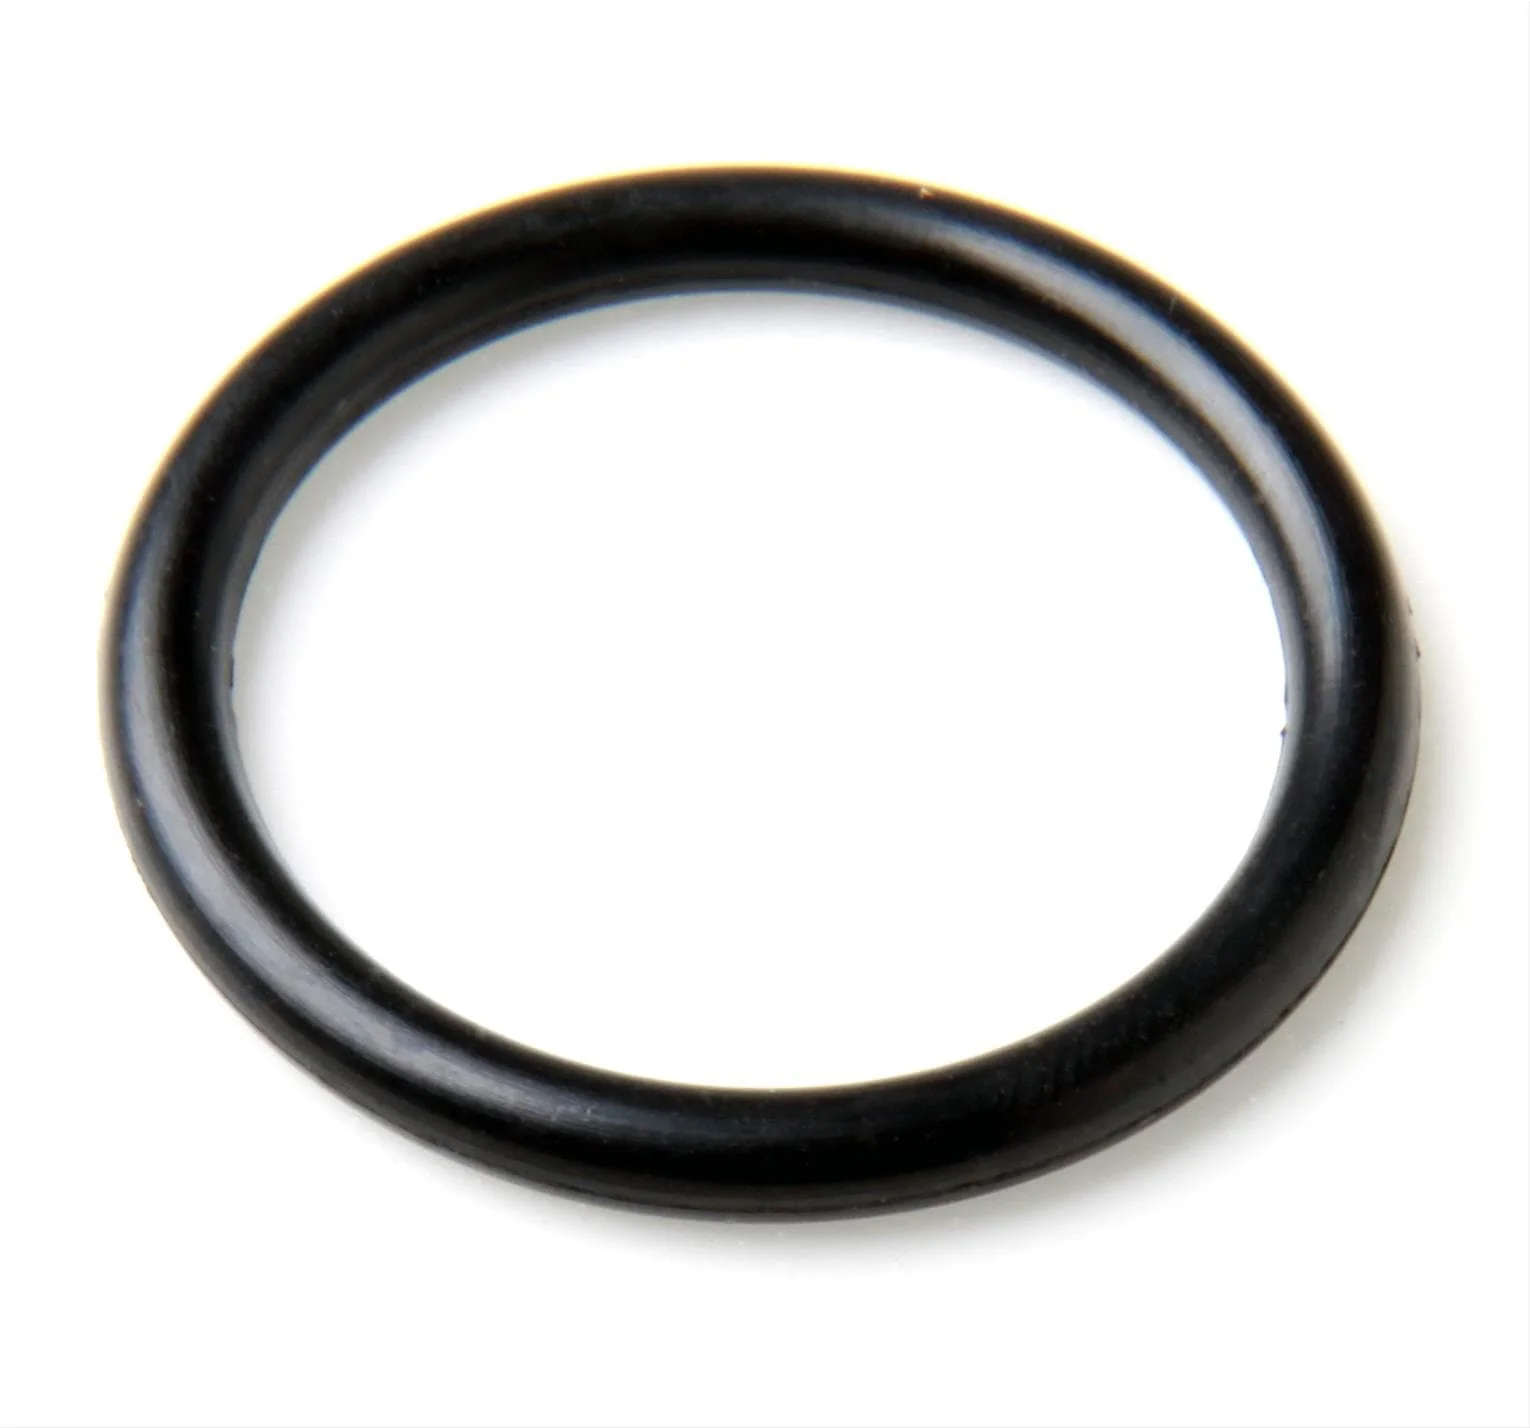 Уплотнительное кольцо 1 мм. Din 3771 кольца резиновые. Кольцо o-Ring 60х2. 8642828 Volvo кольцо уплотнительное. Уплотнительное кольцо ф5,7*1,9мм nbr70 (006-009-19).